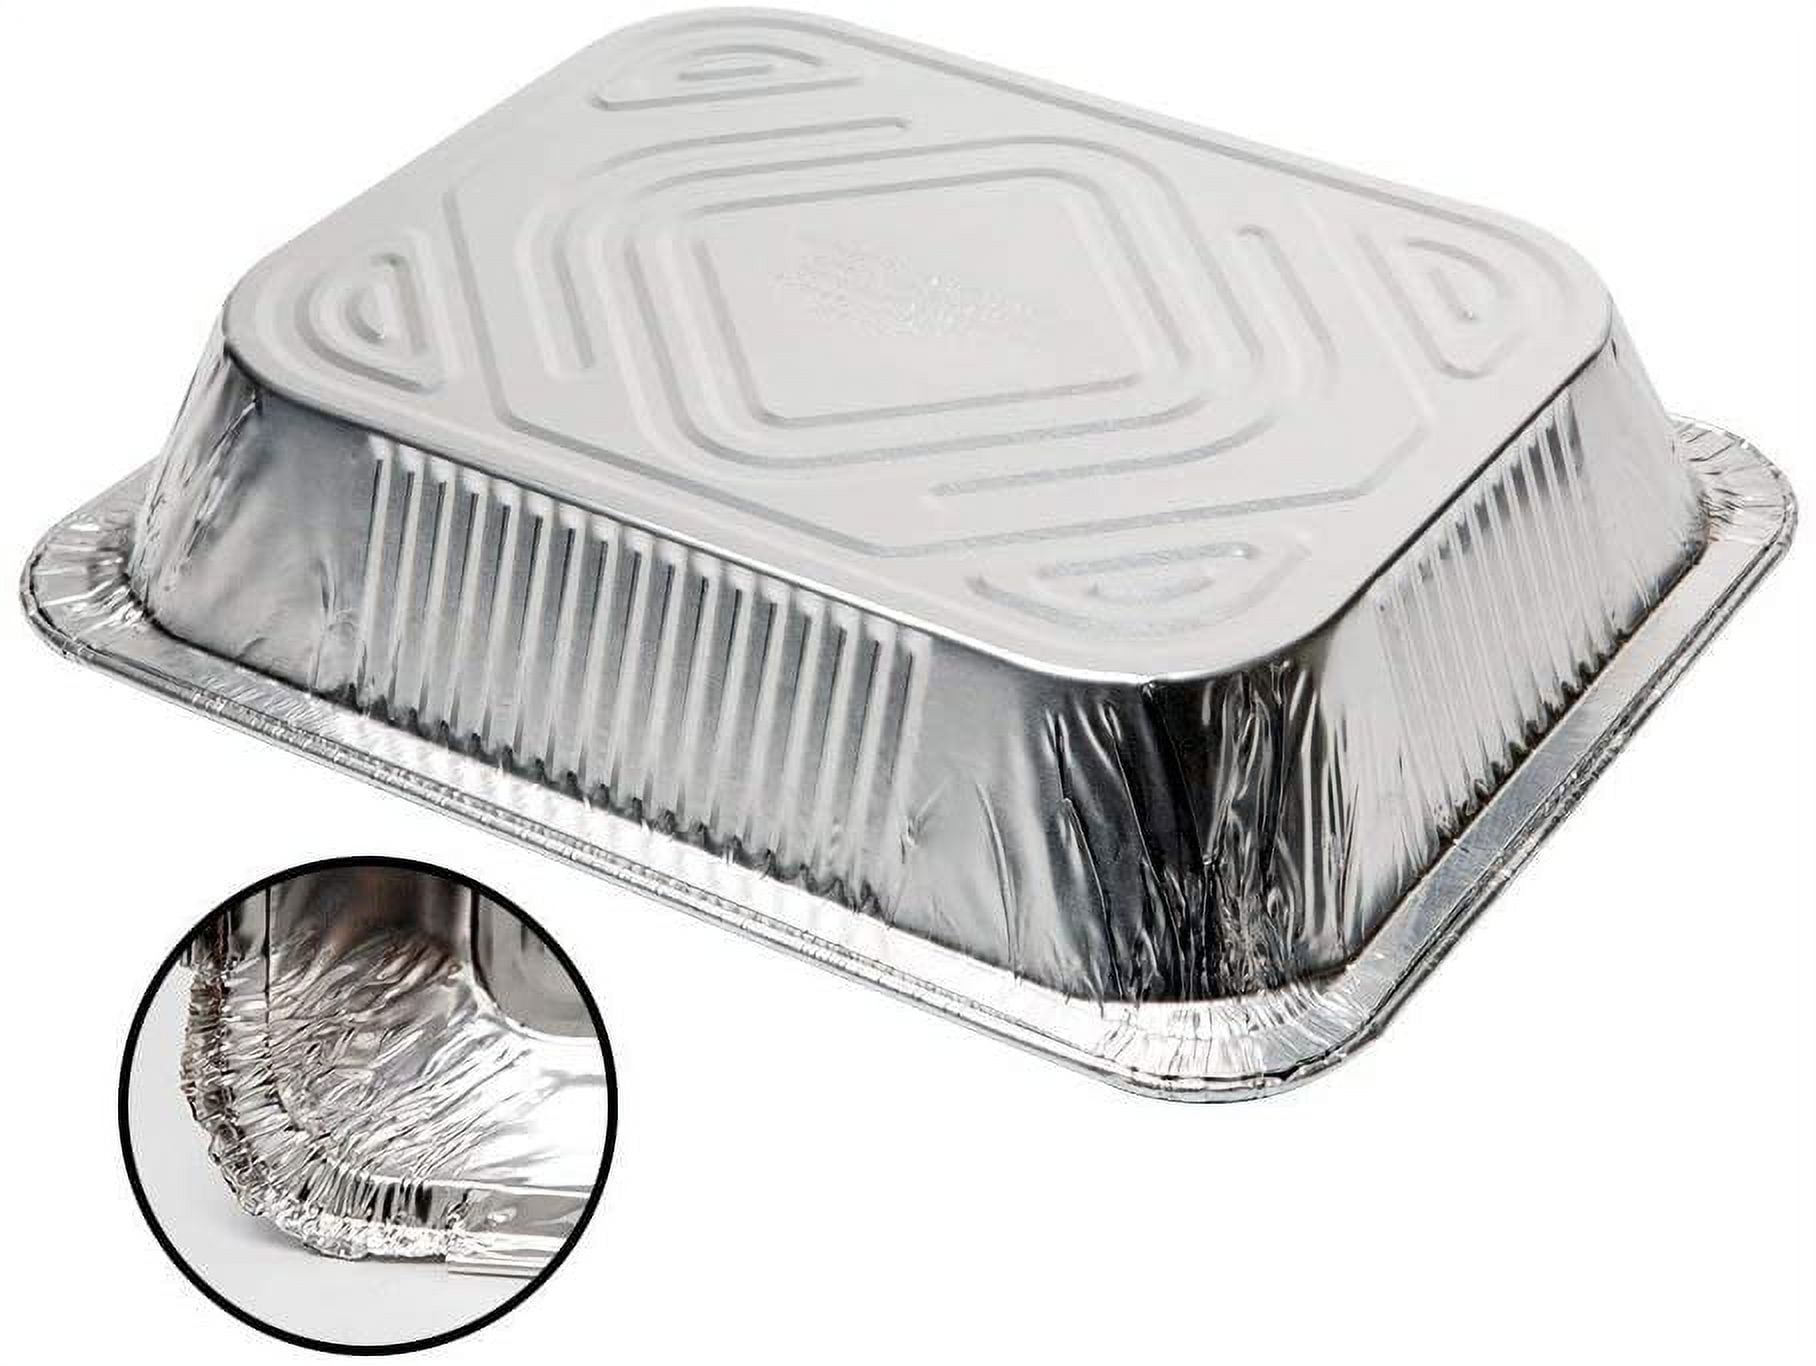 [300] Aluminum Pans 9x13 Disposable Foil Pans Half Size Steam Table Deep Aluminum Trays Heavy Duty - Tin Foil Disposable Pans, Bakeware, Lasagna Pan